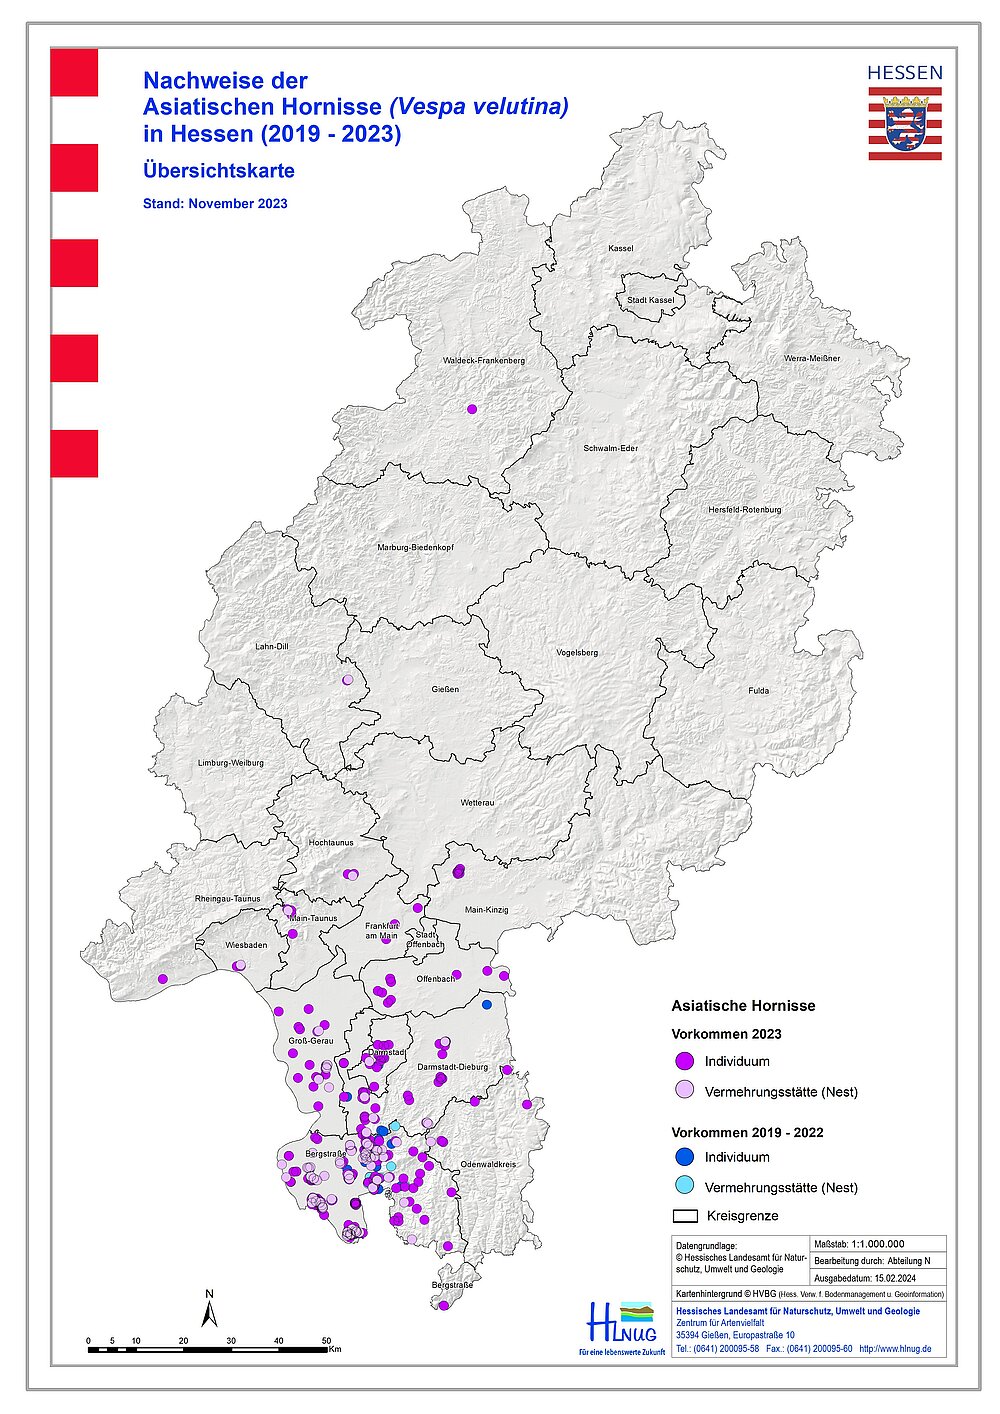 Übersichtskarte zu Nachweisen der Asiatischen Hornisse in Hessen 2019–2023Asiatischen Hornisse in Hessen